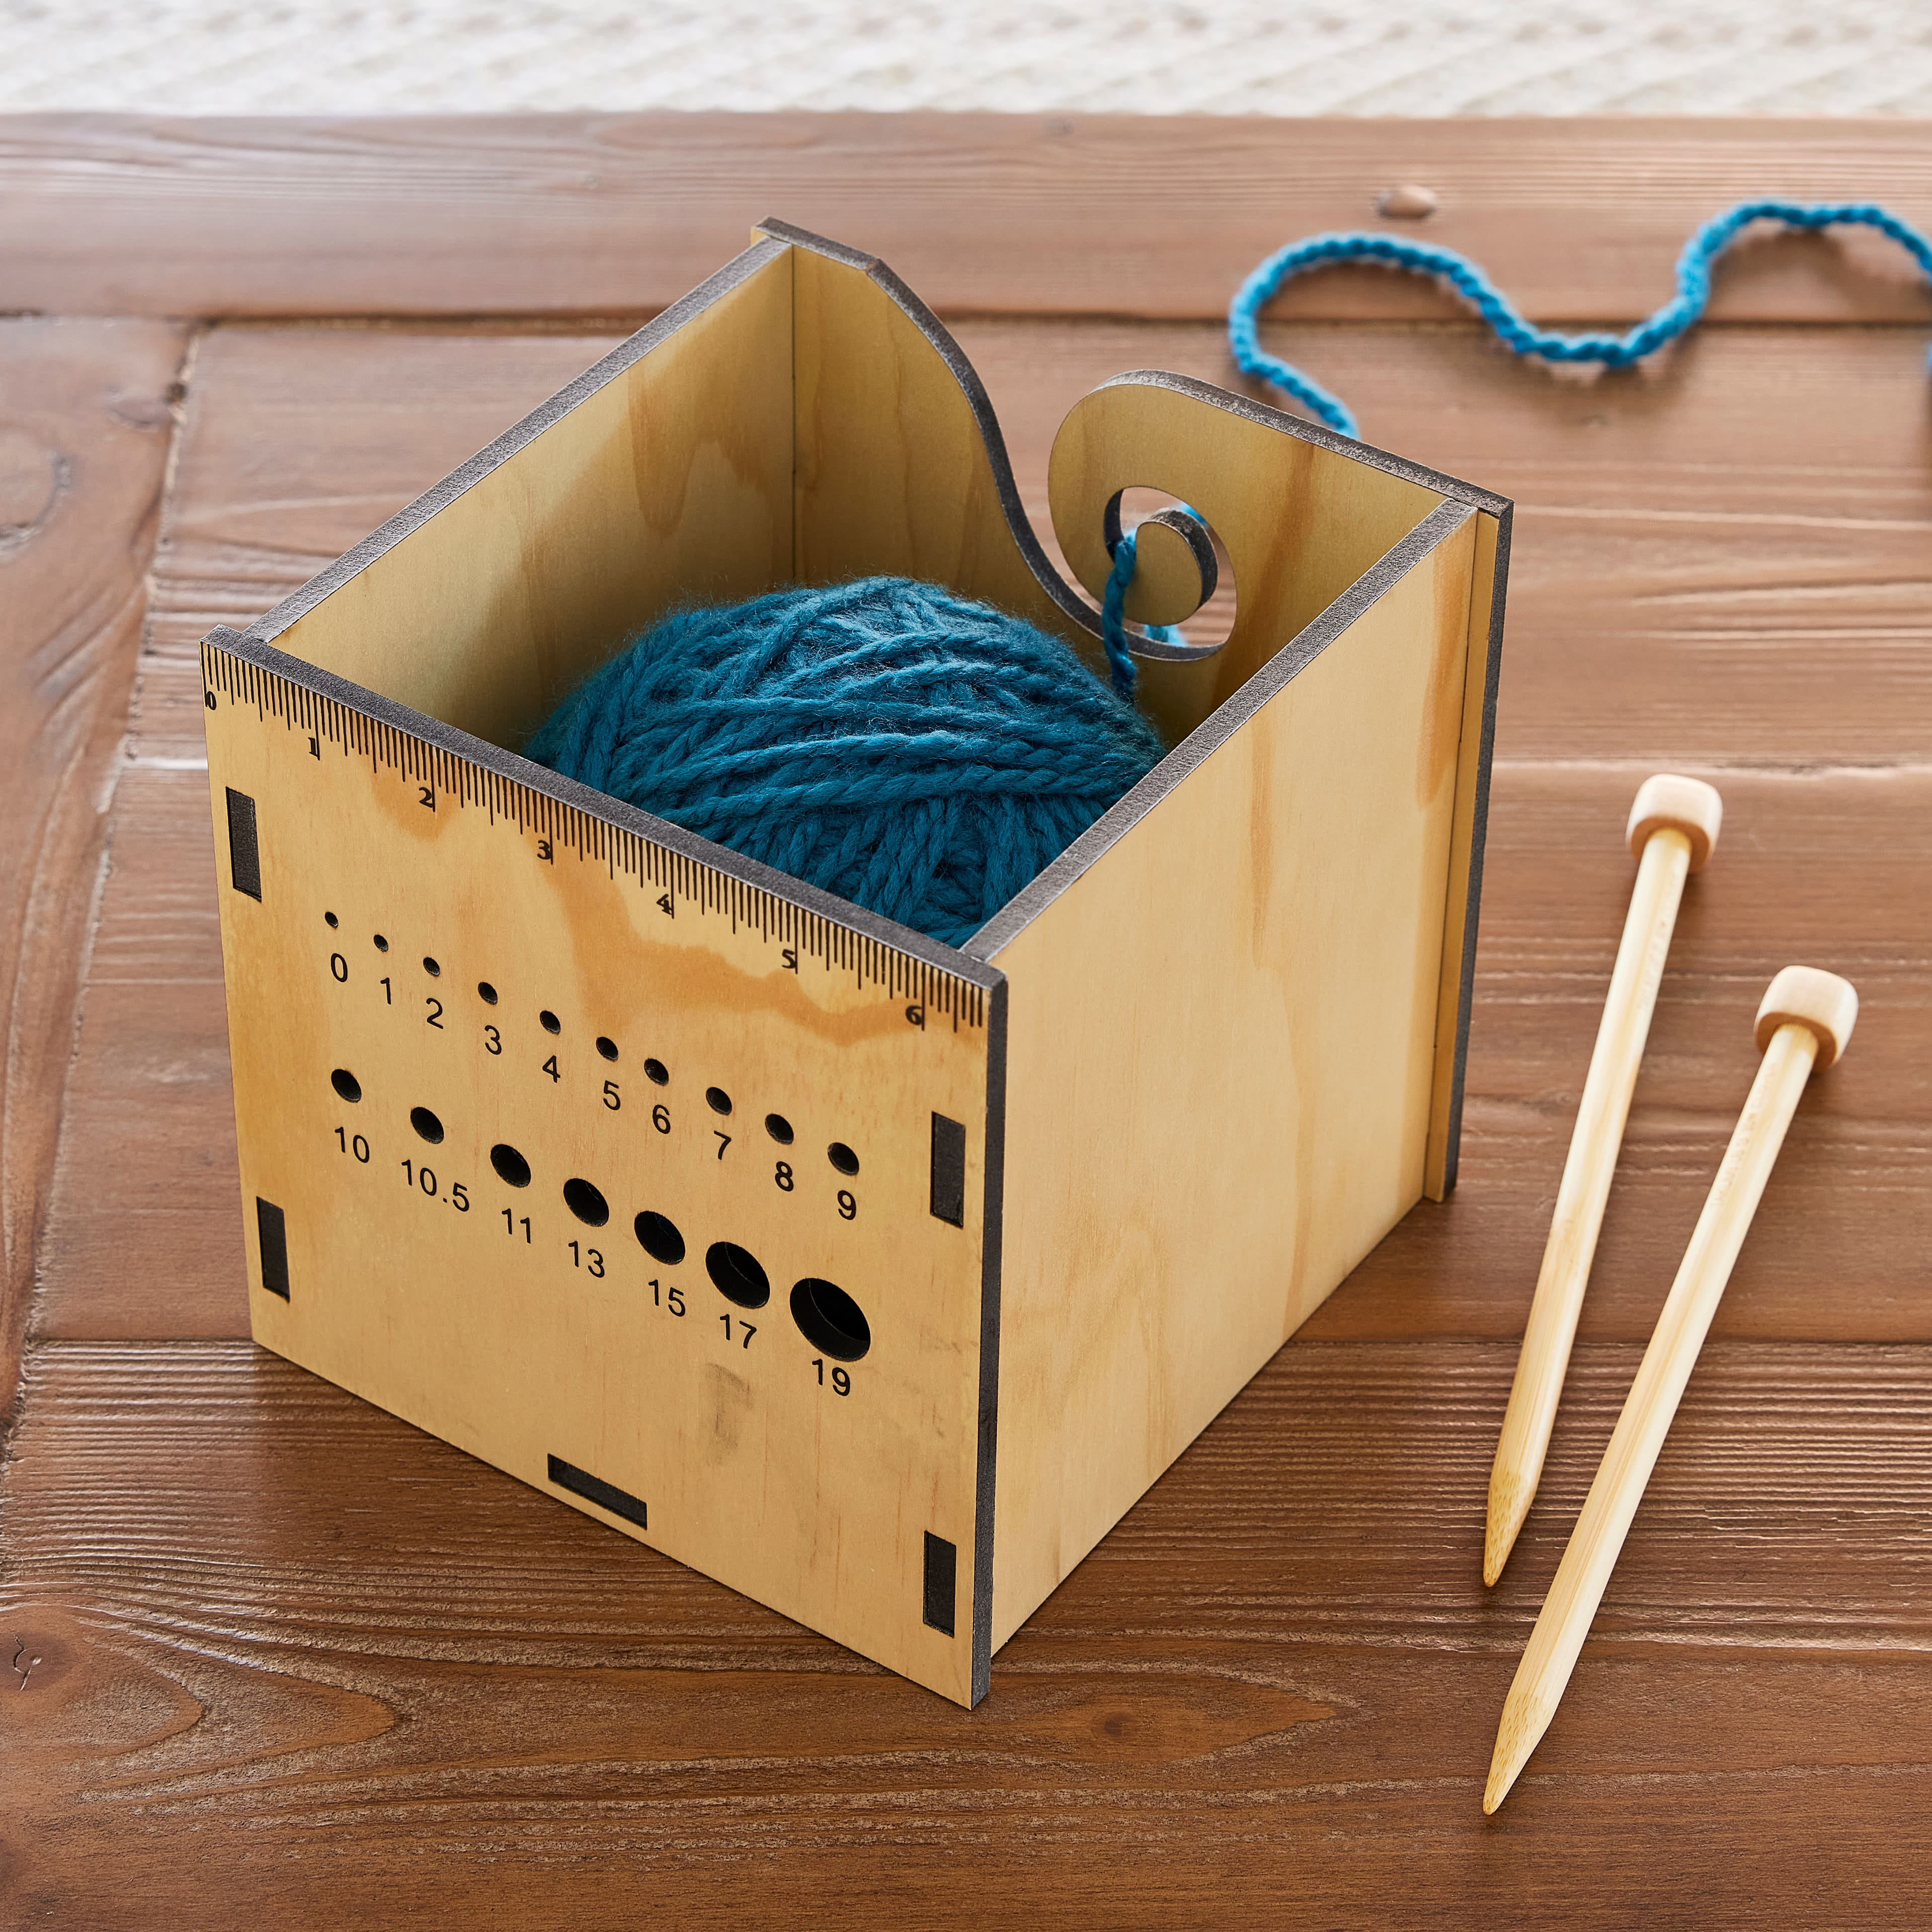 Yarn Storage Box by Loops & Threads®